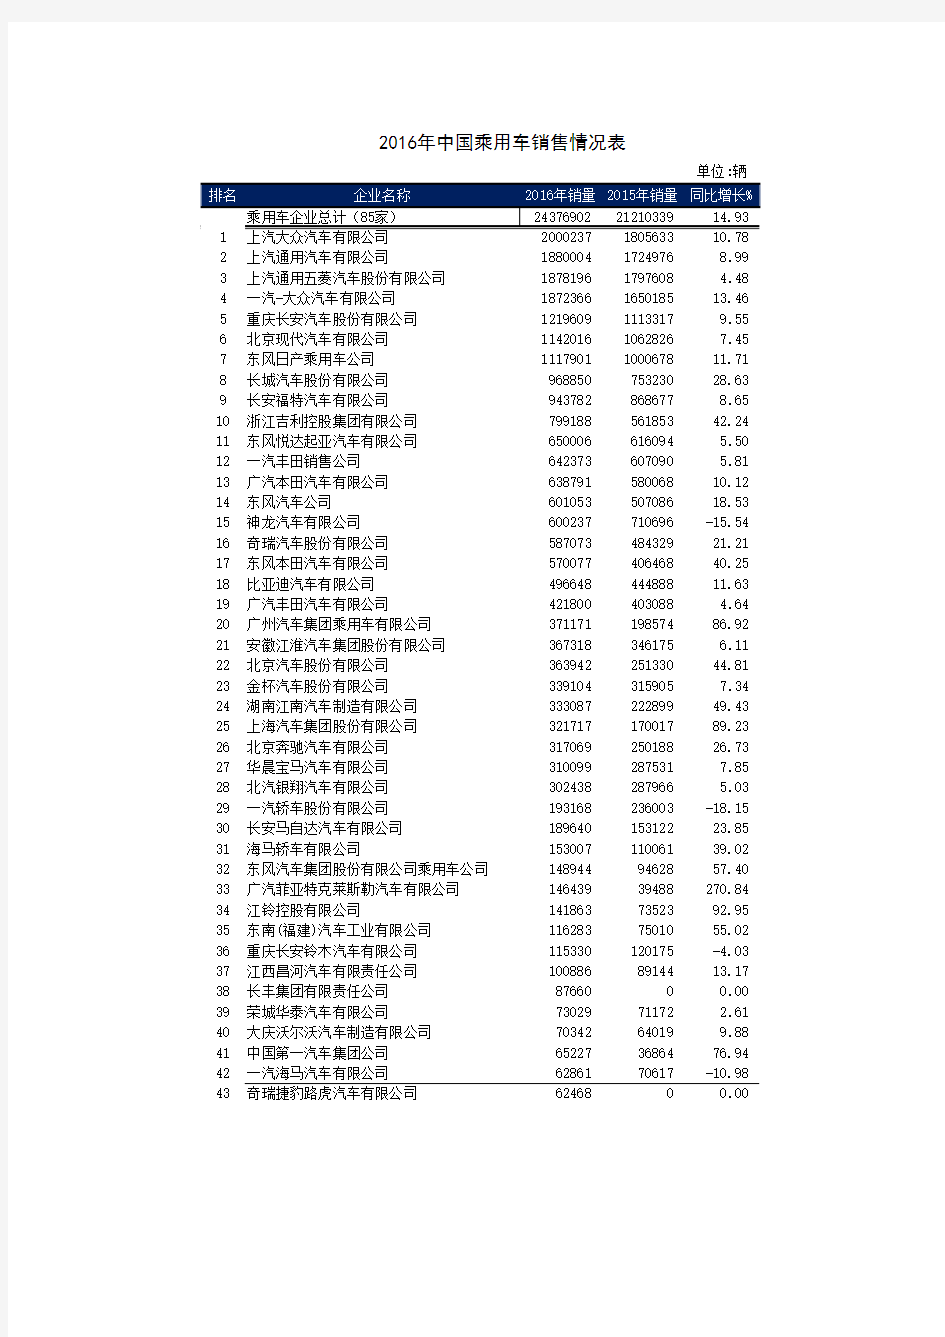 2016年中国乘用车销售情况表